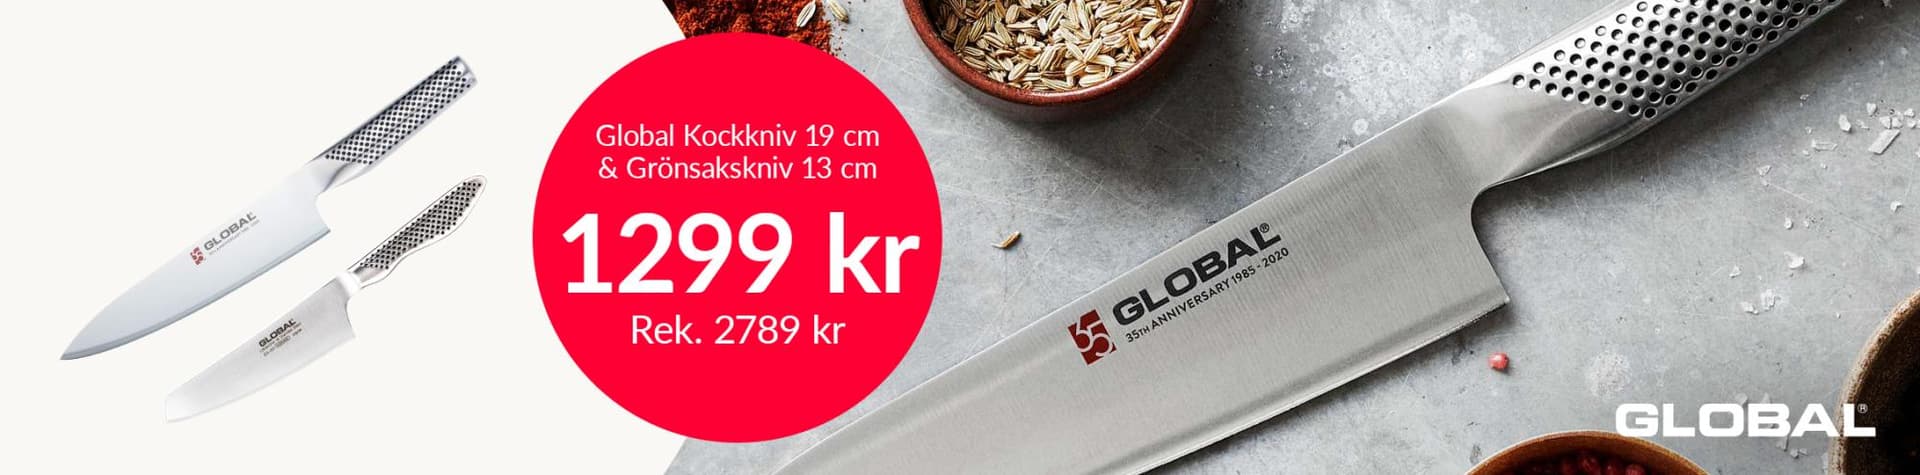 Global Kockkniv 19 cm & Grönsakskniv 13 cm